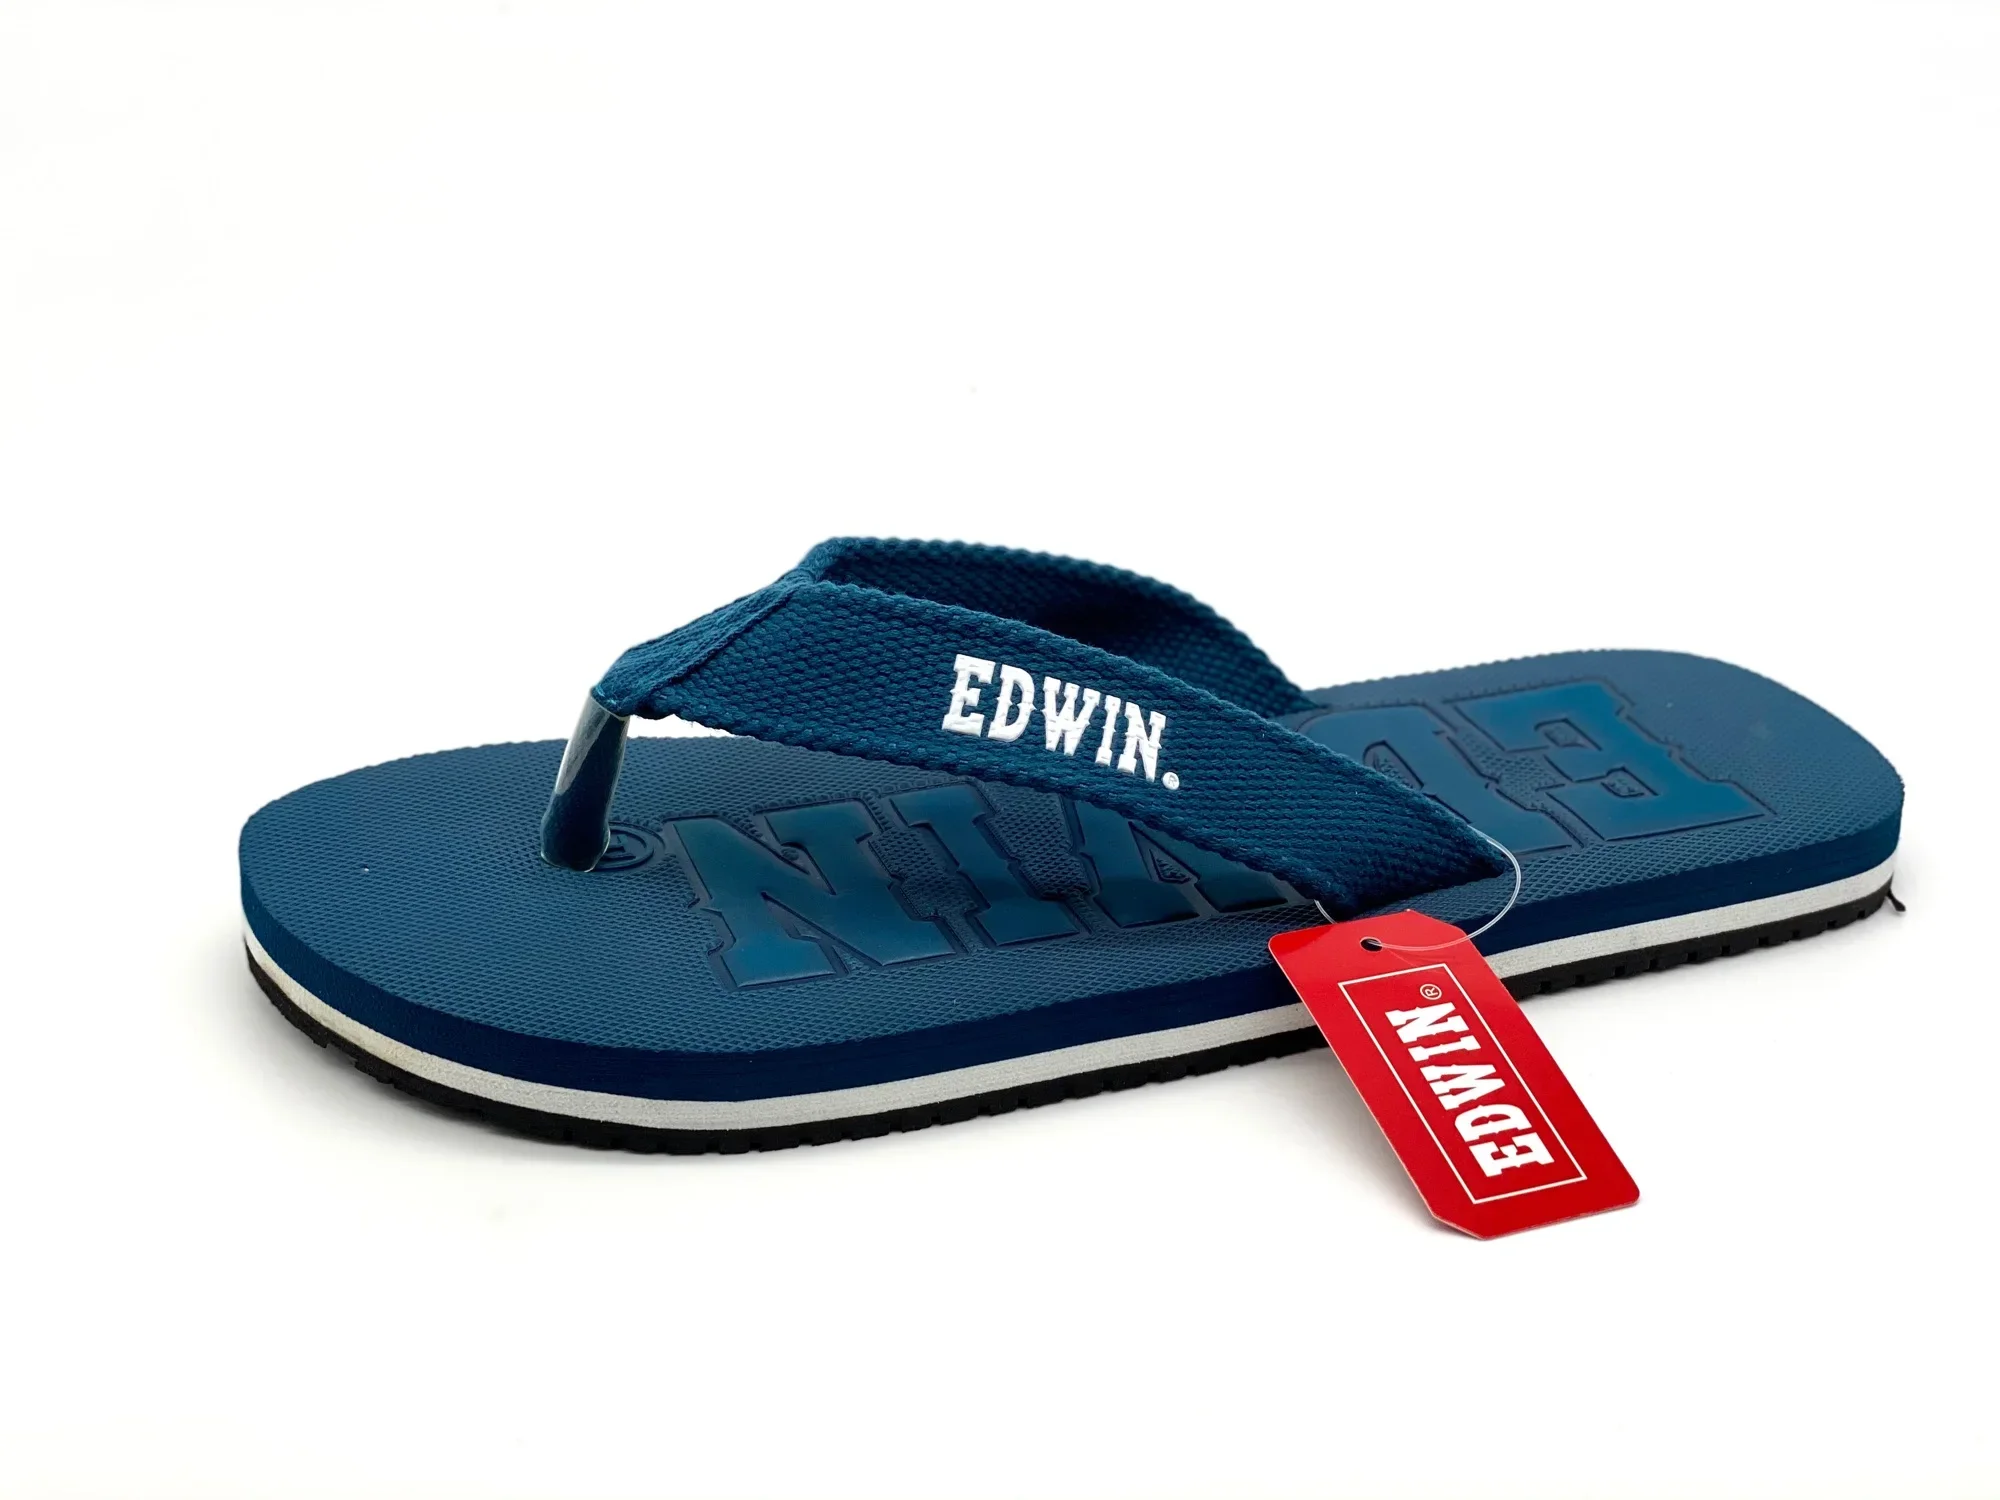 EDWIN SLIPPER FOR MEN [Ready Stock] 100% Original EDWIN 10483